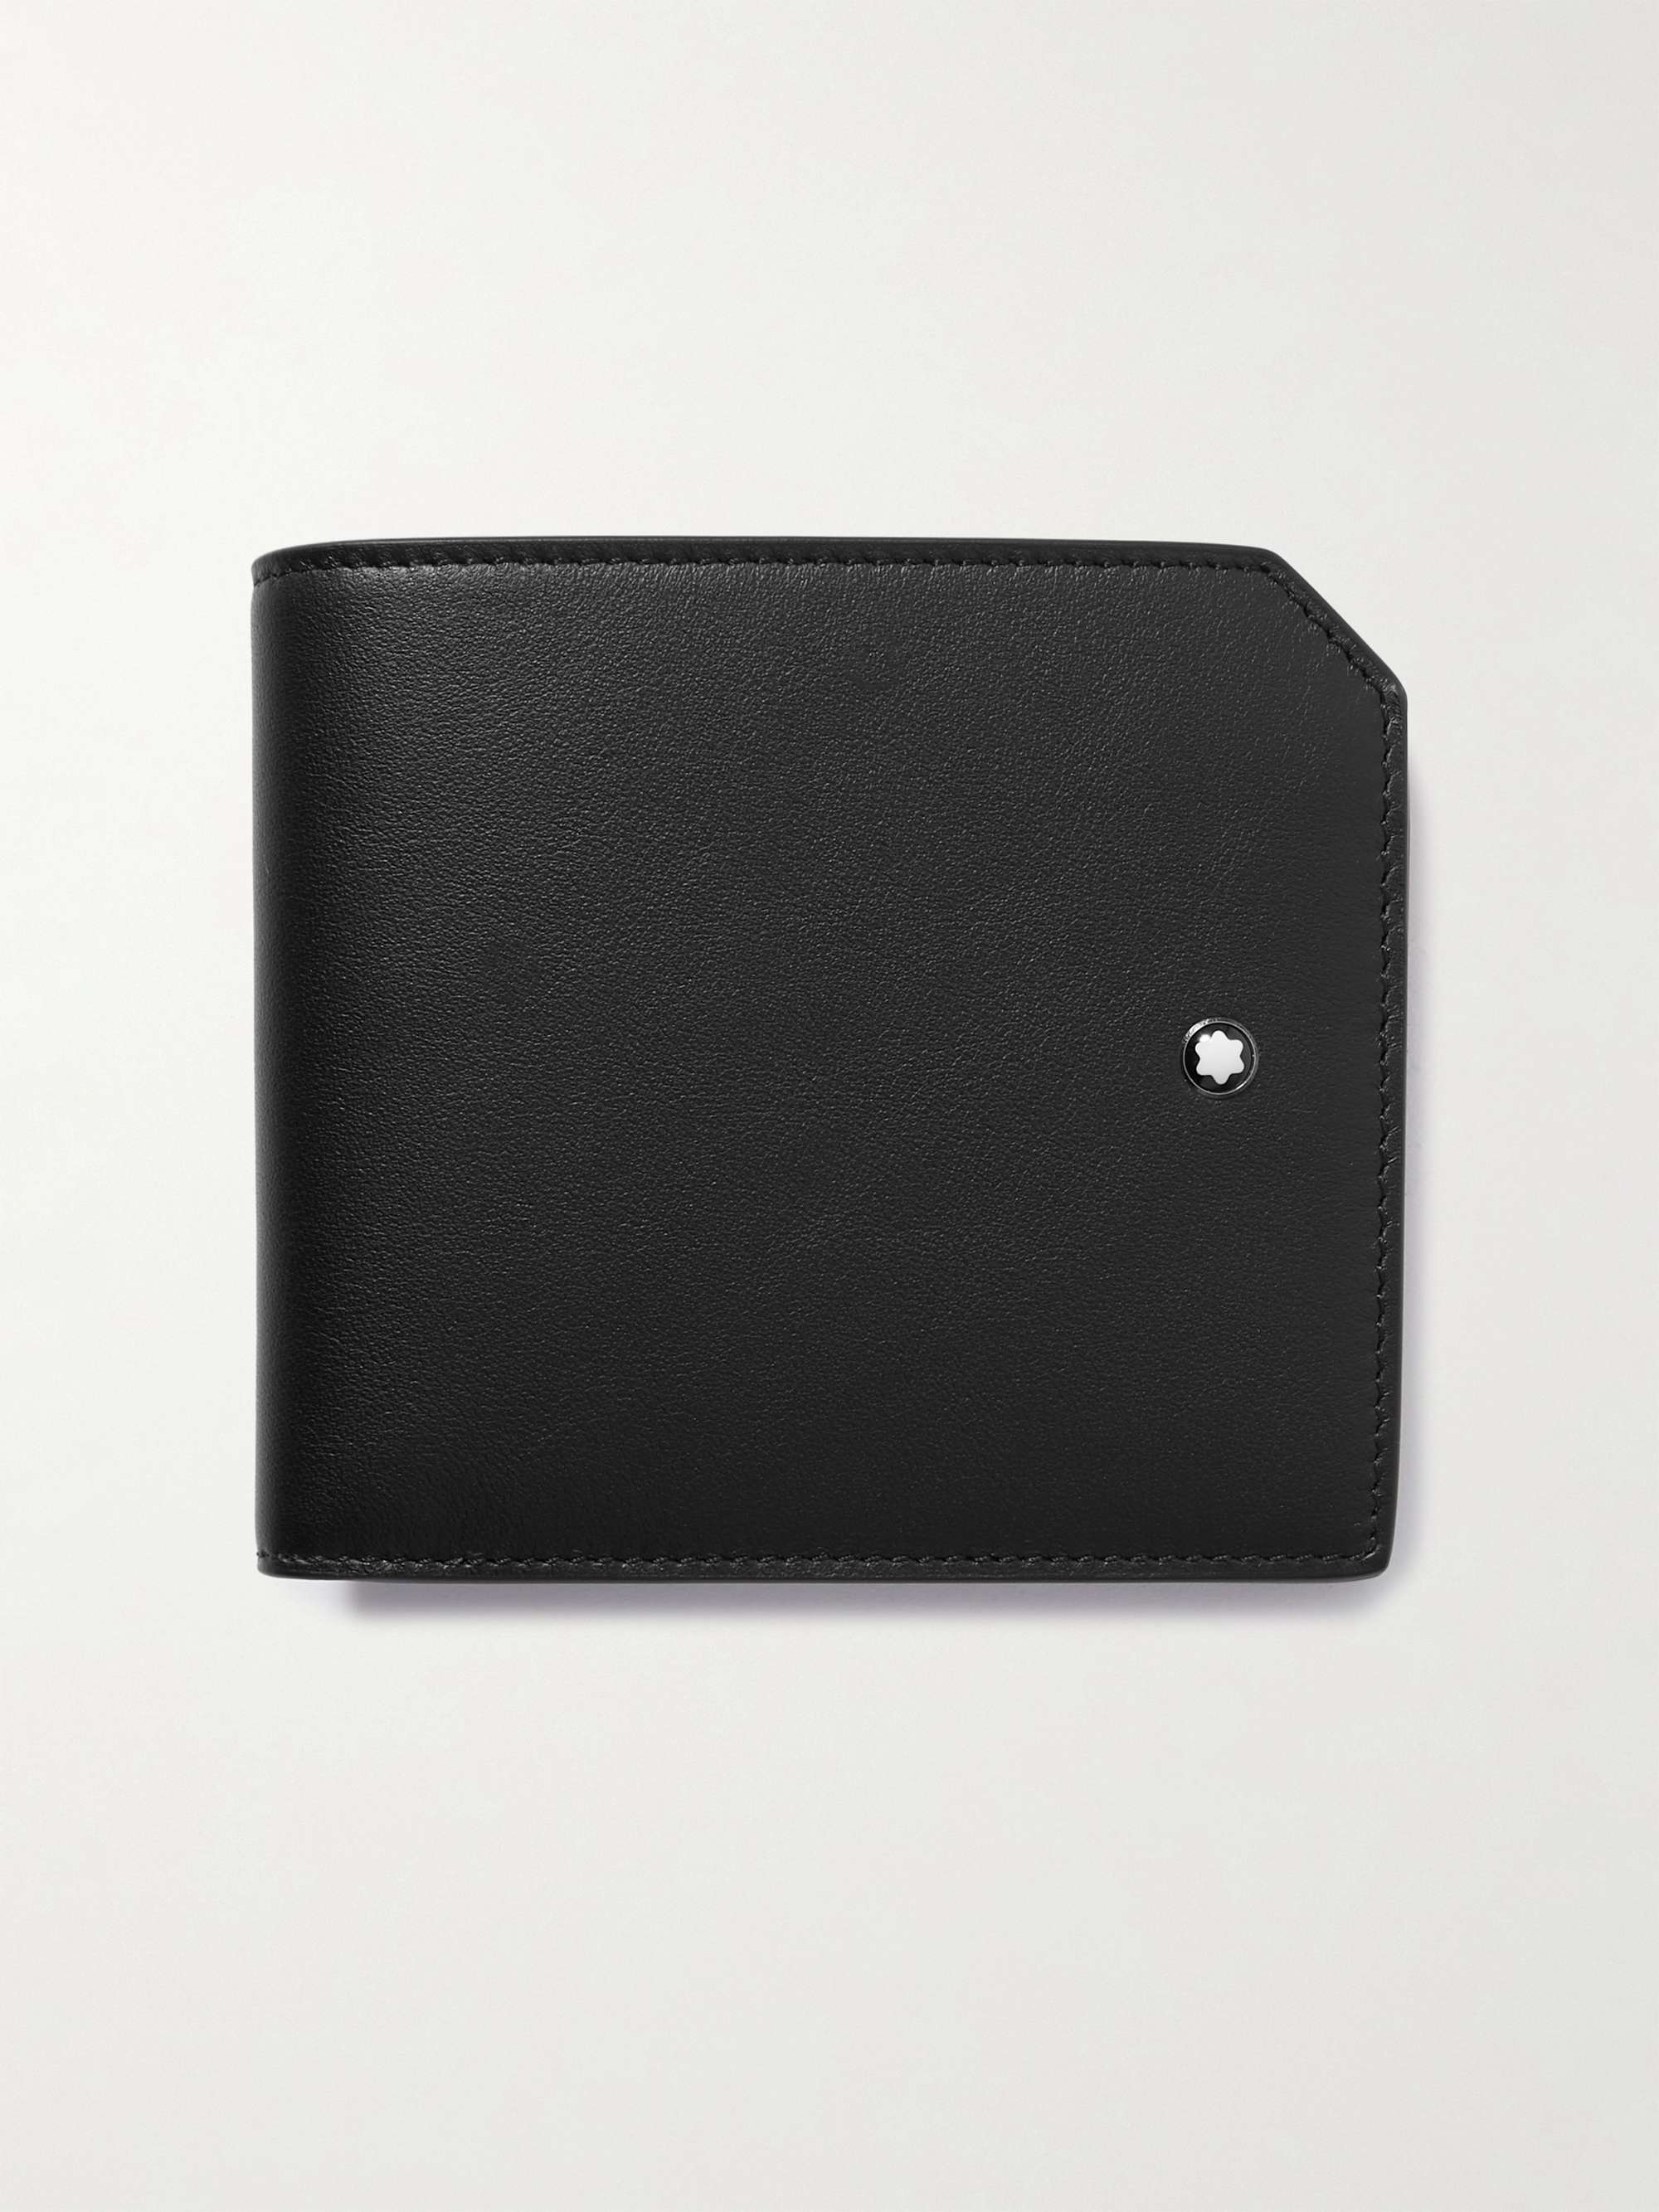 몽블랑 Montblanc Meisterstueck Leather Billfold Wallet with Lanyard,Black